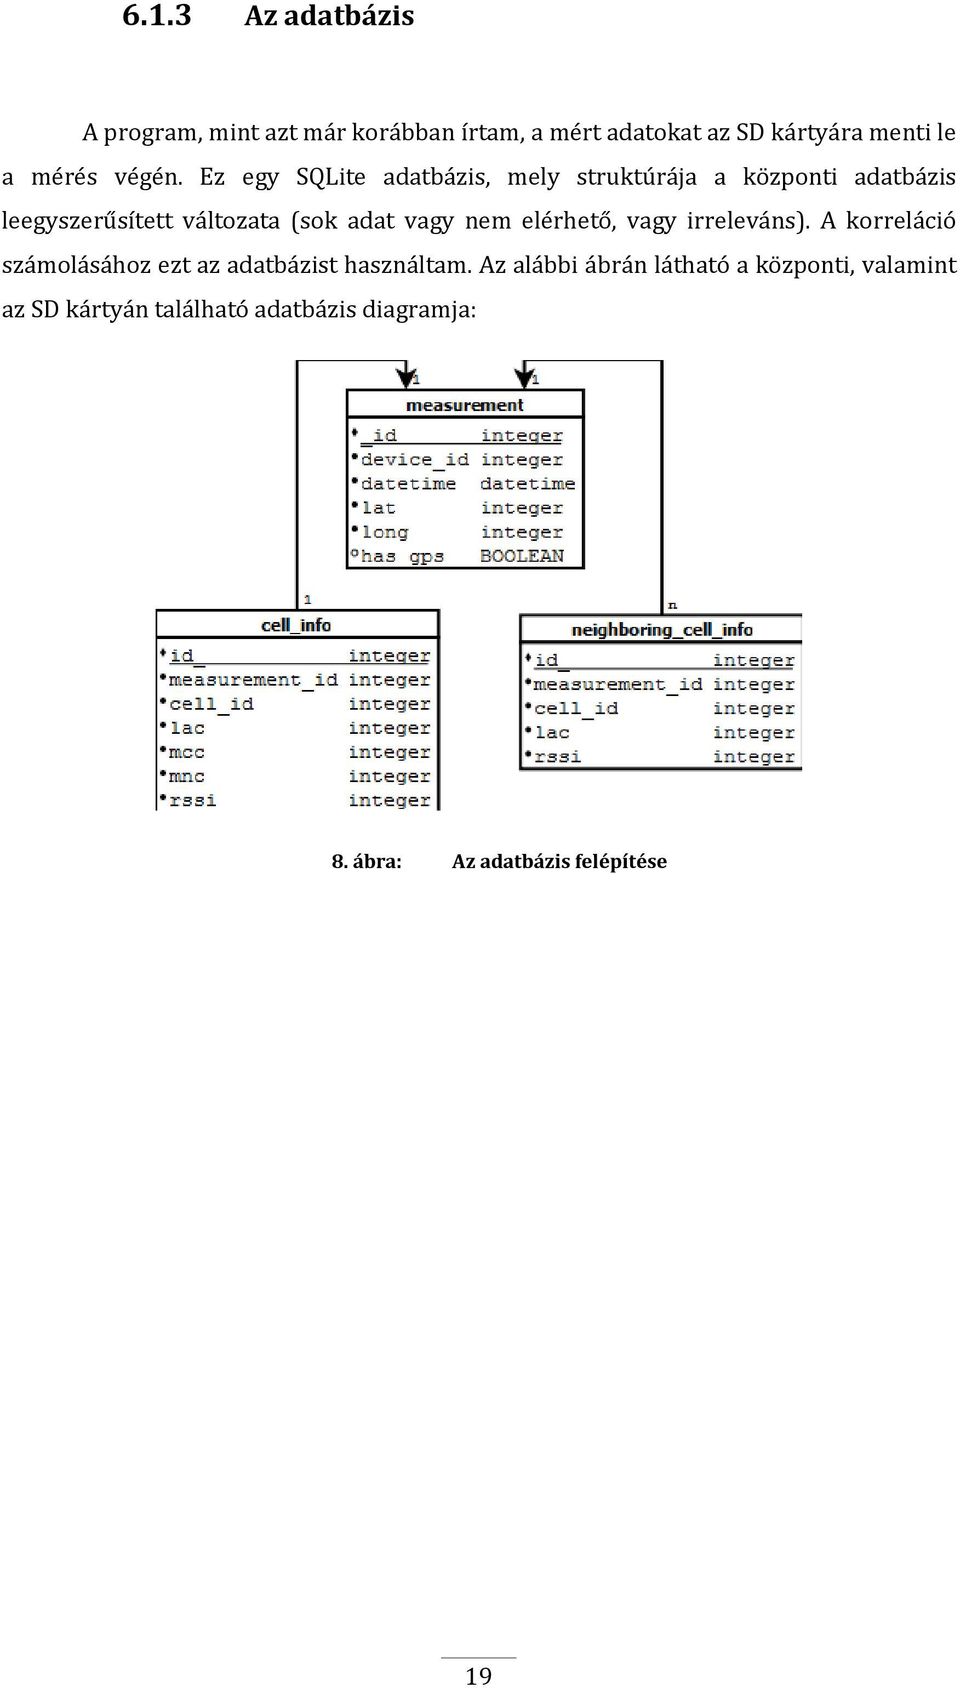 Ez egy SQLite adatbázis, mely struktúrája a központi adatbázis leegyszerűsített változata (sok adat vagy